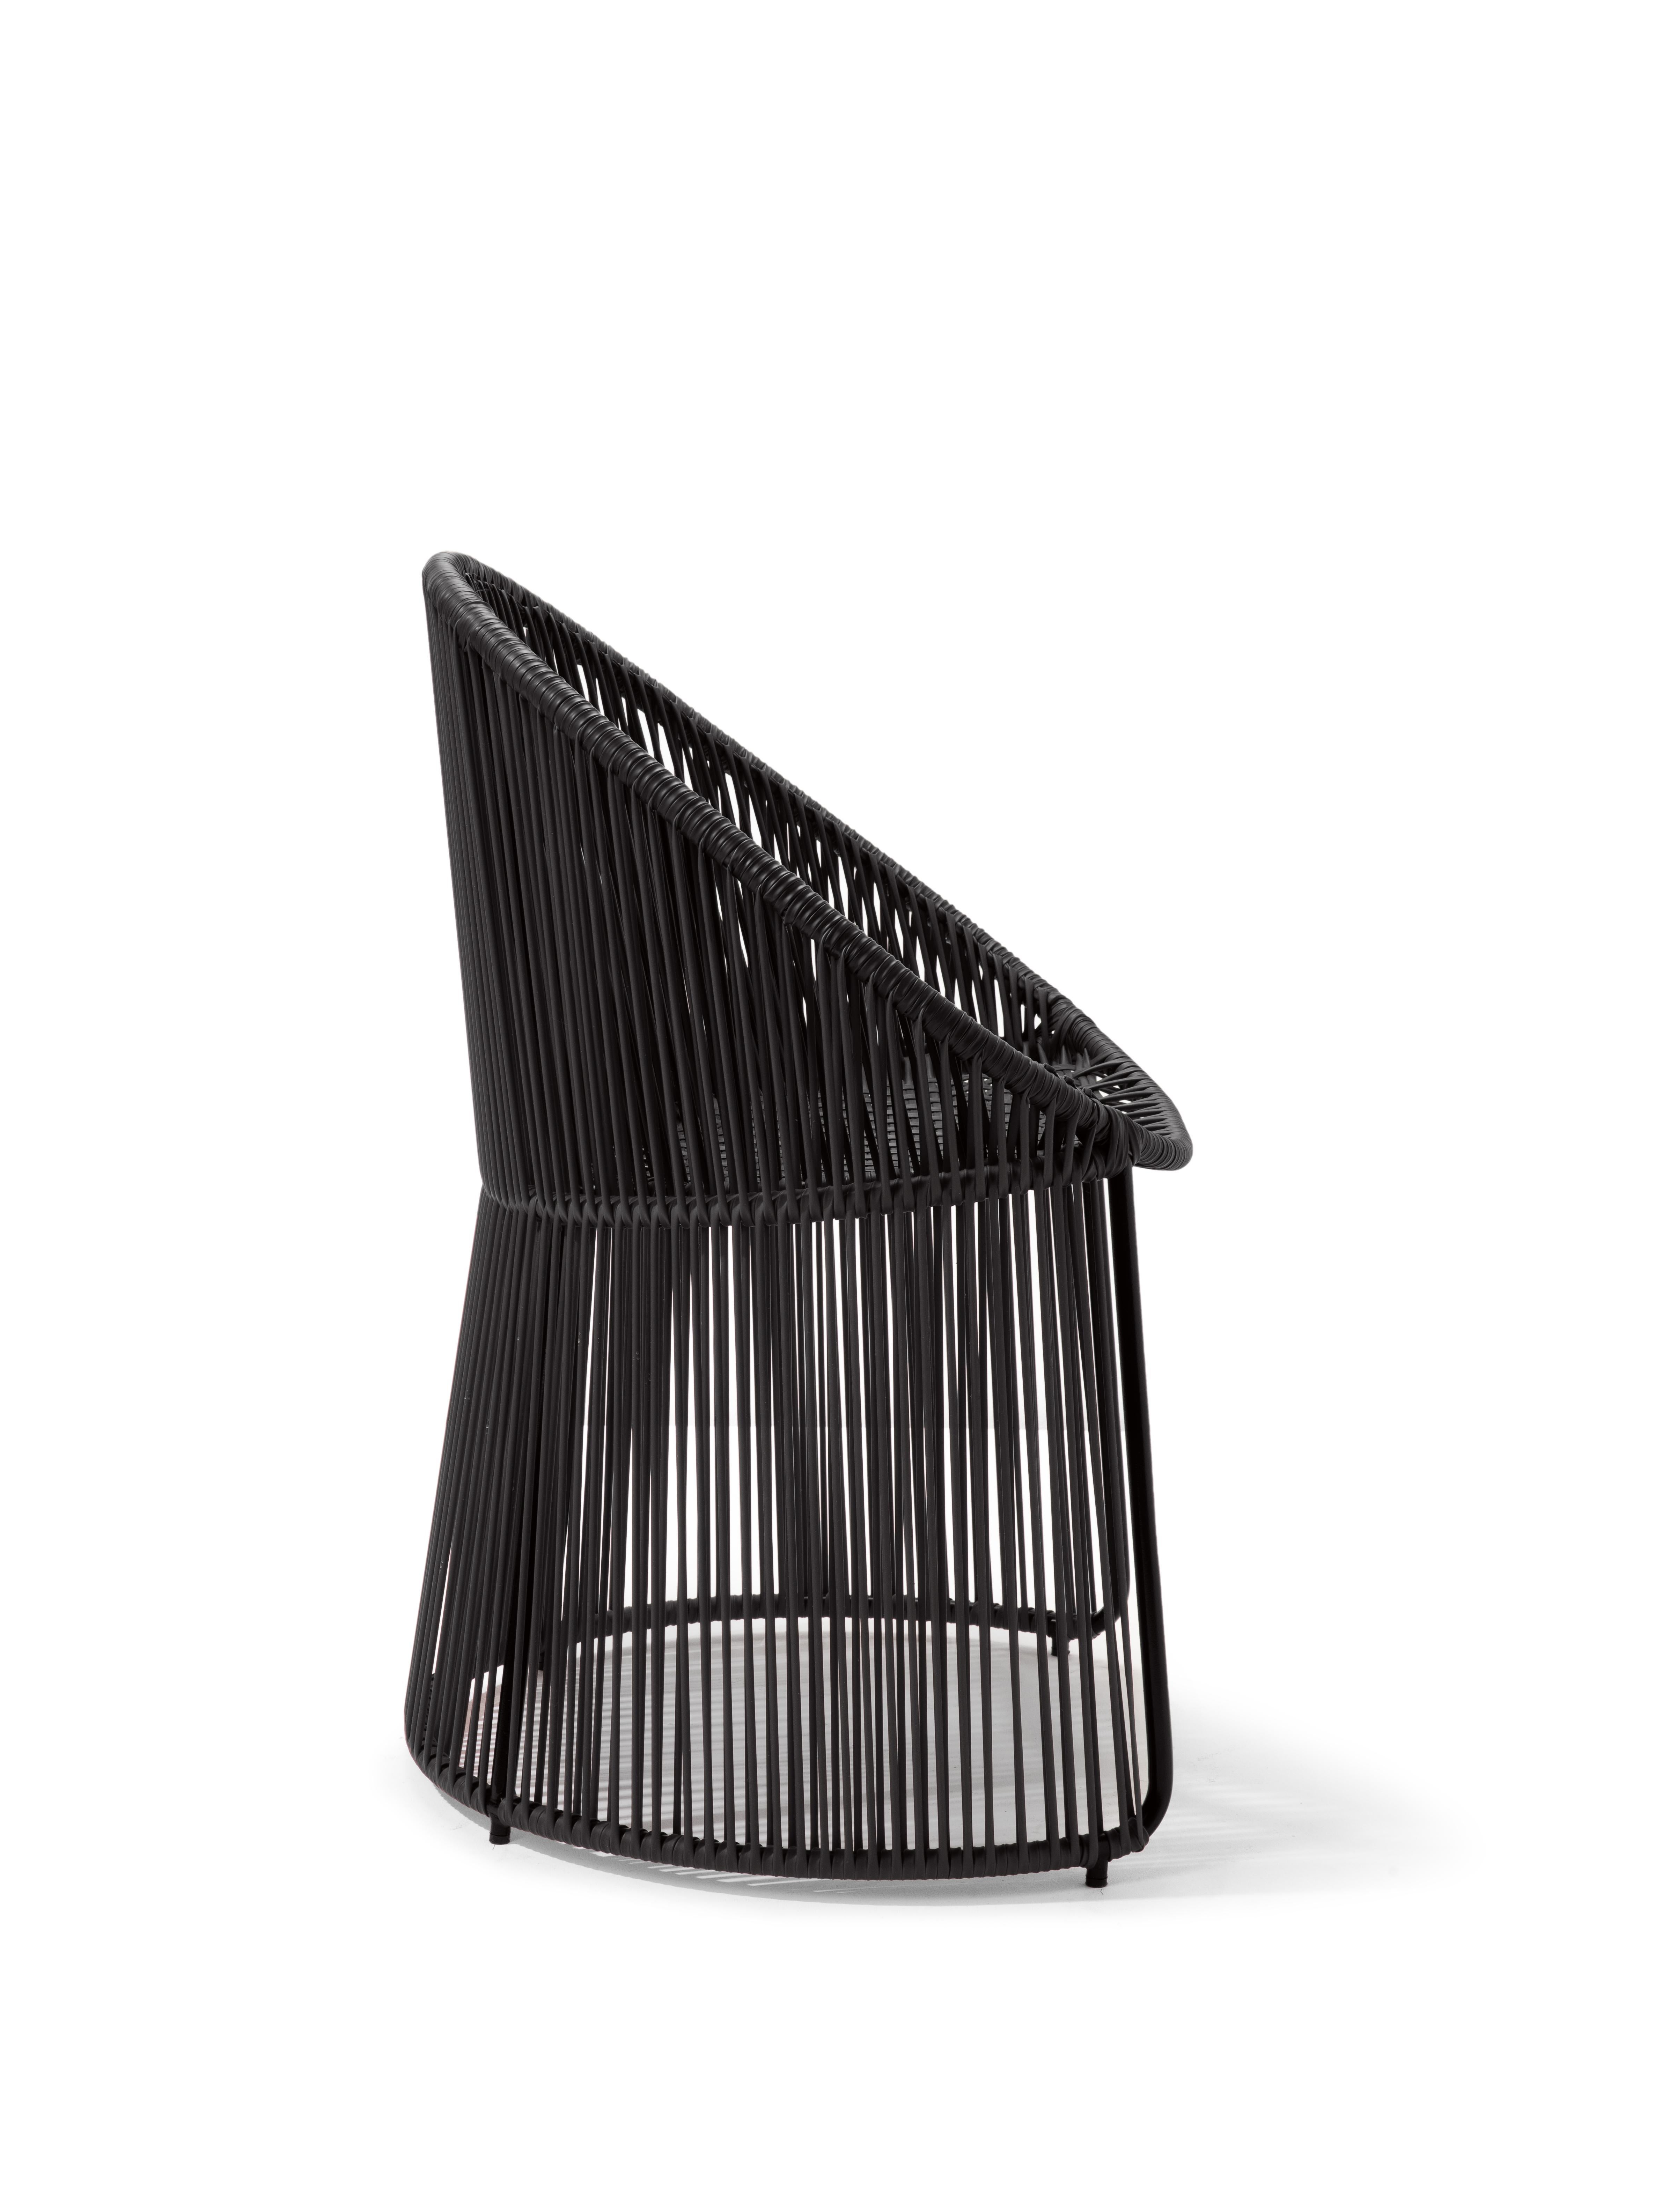 German Set of 2 Black Cartagenas Dining Chair by Sebastian Herkner For Sale